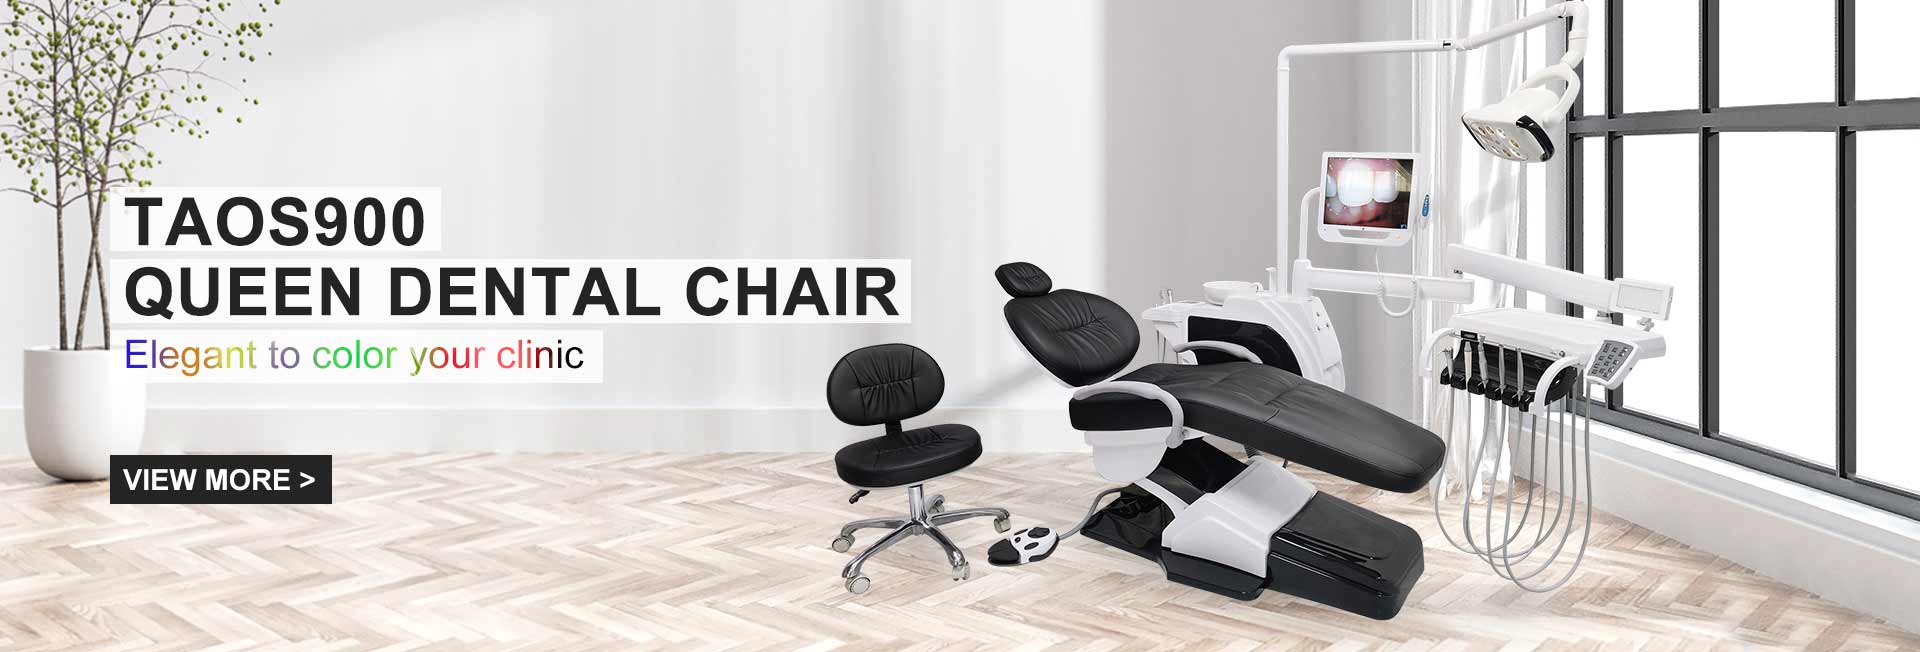 TAOS900-Queen-Dental-Chair